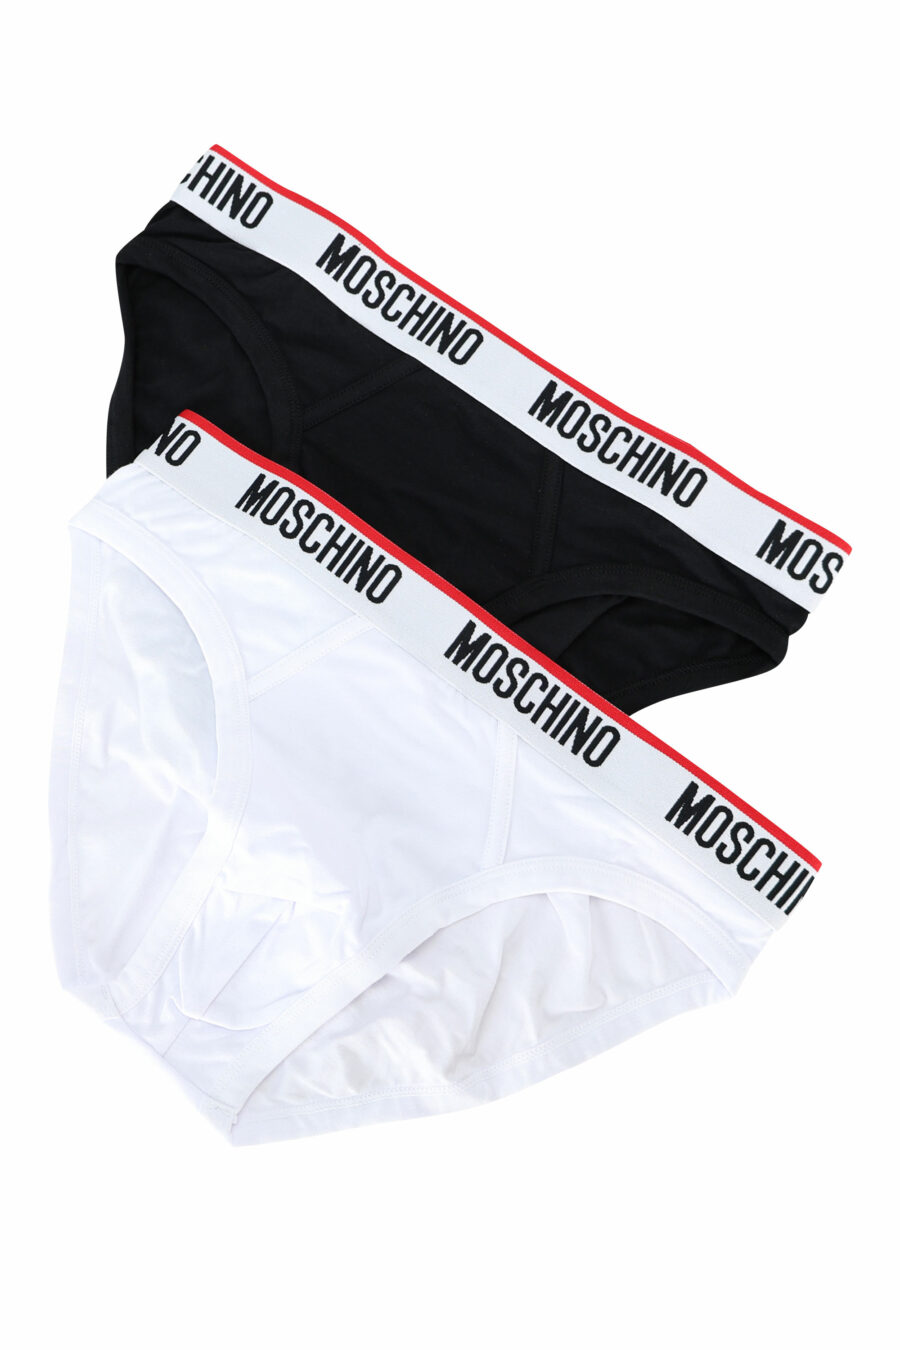 Moschino - Calzoncillos negros con logo en cinta en cintura - BLS